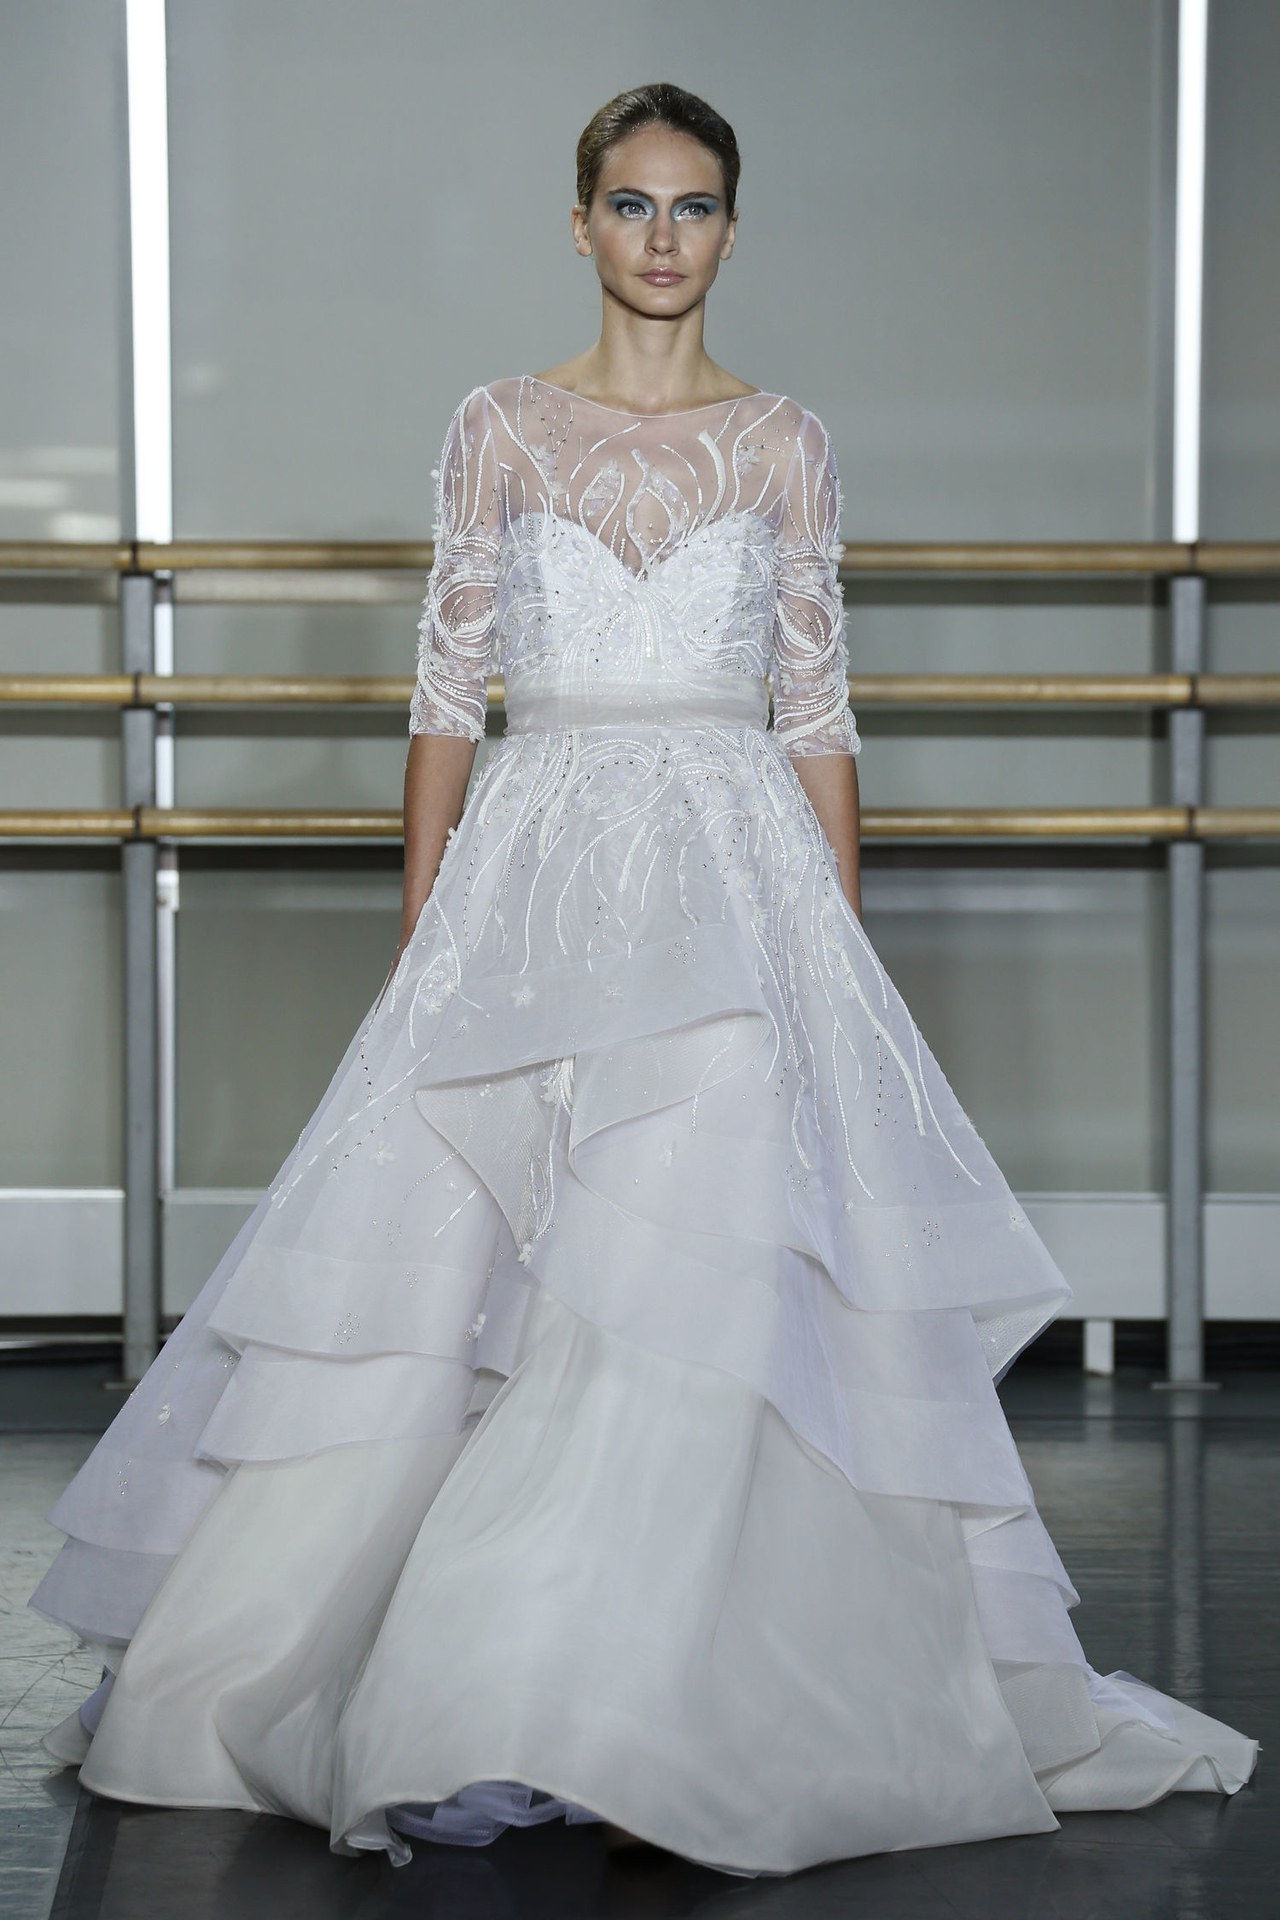 1 elizabeth taylor first wedding dresses inspired by wedding gowns conrad hilton celebrity weddings 0626